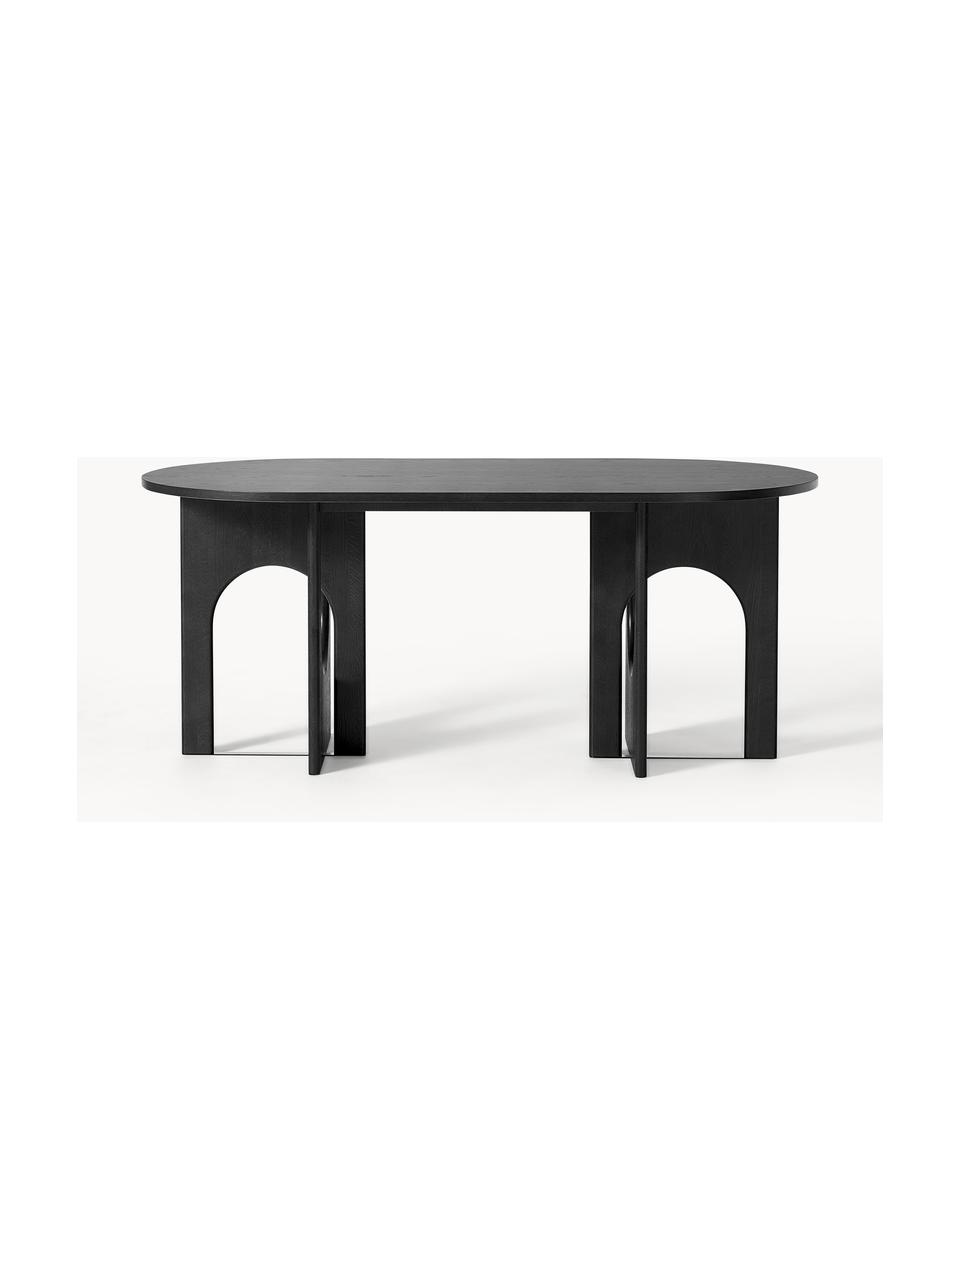 Ovaler Esstisch Apollo, in verschiedenen Größen, Tischplatte: Eichenholzfurnier, lackie, Beine: Eichenholz, lackiert, Met, Eichenholz, schwarz lackiert, B 200 x T 90 cm